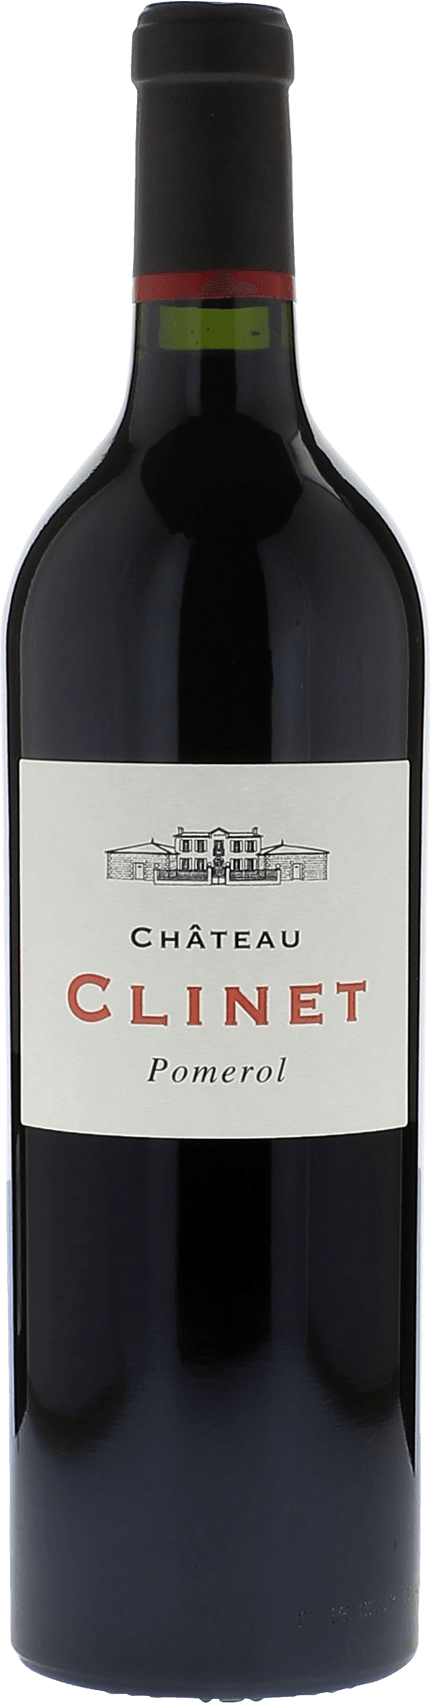 Clinet 1983  Pomerol, Bordeaux rouge